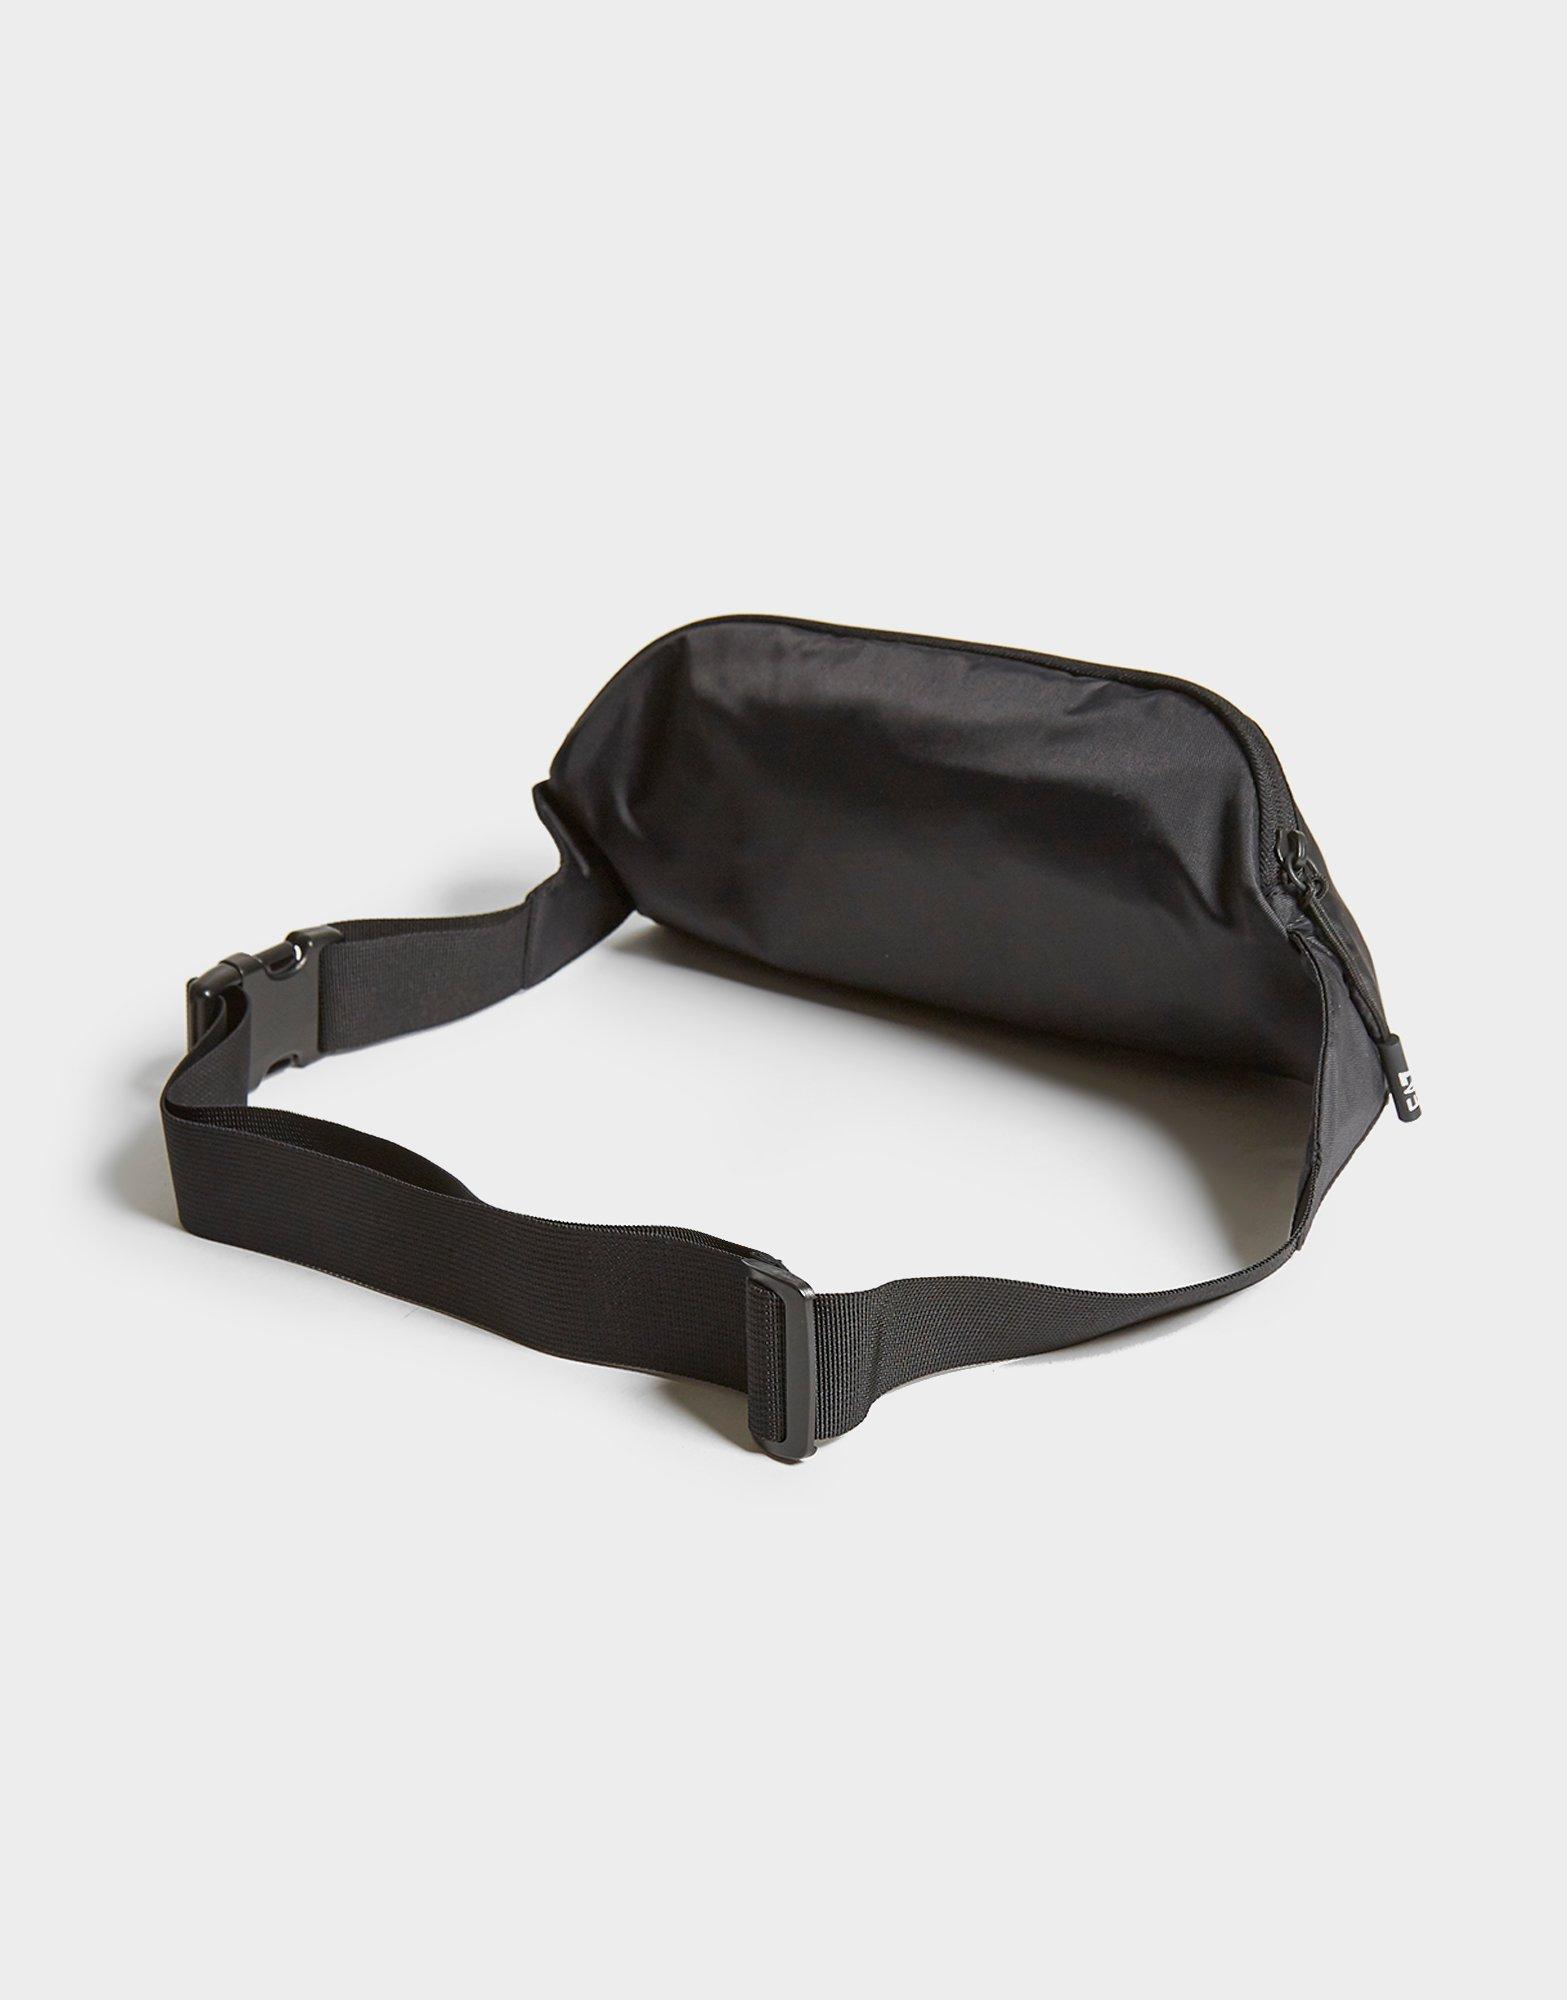 sling bag armani